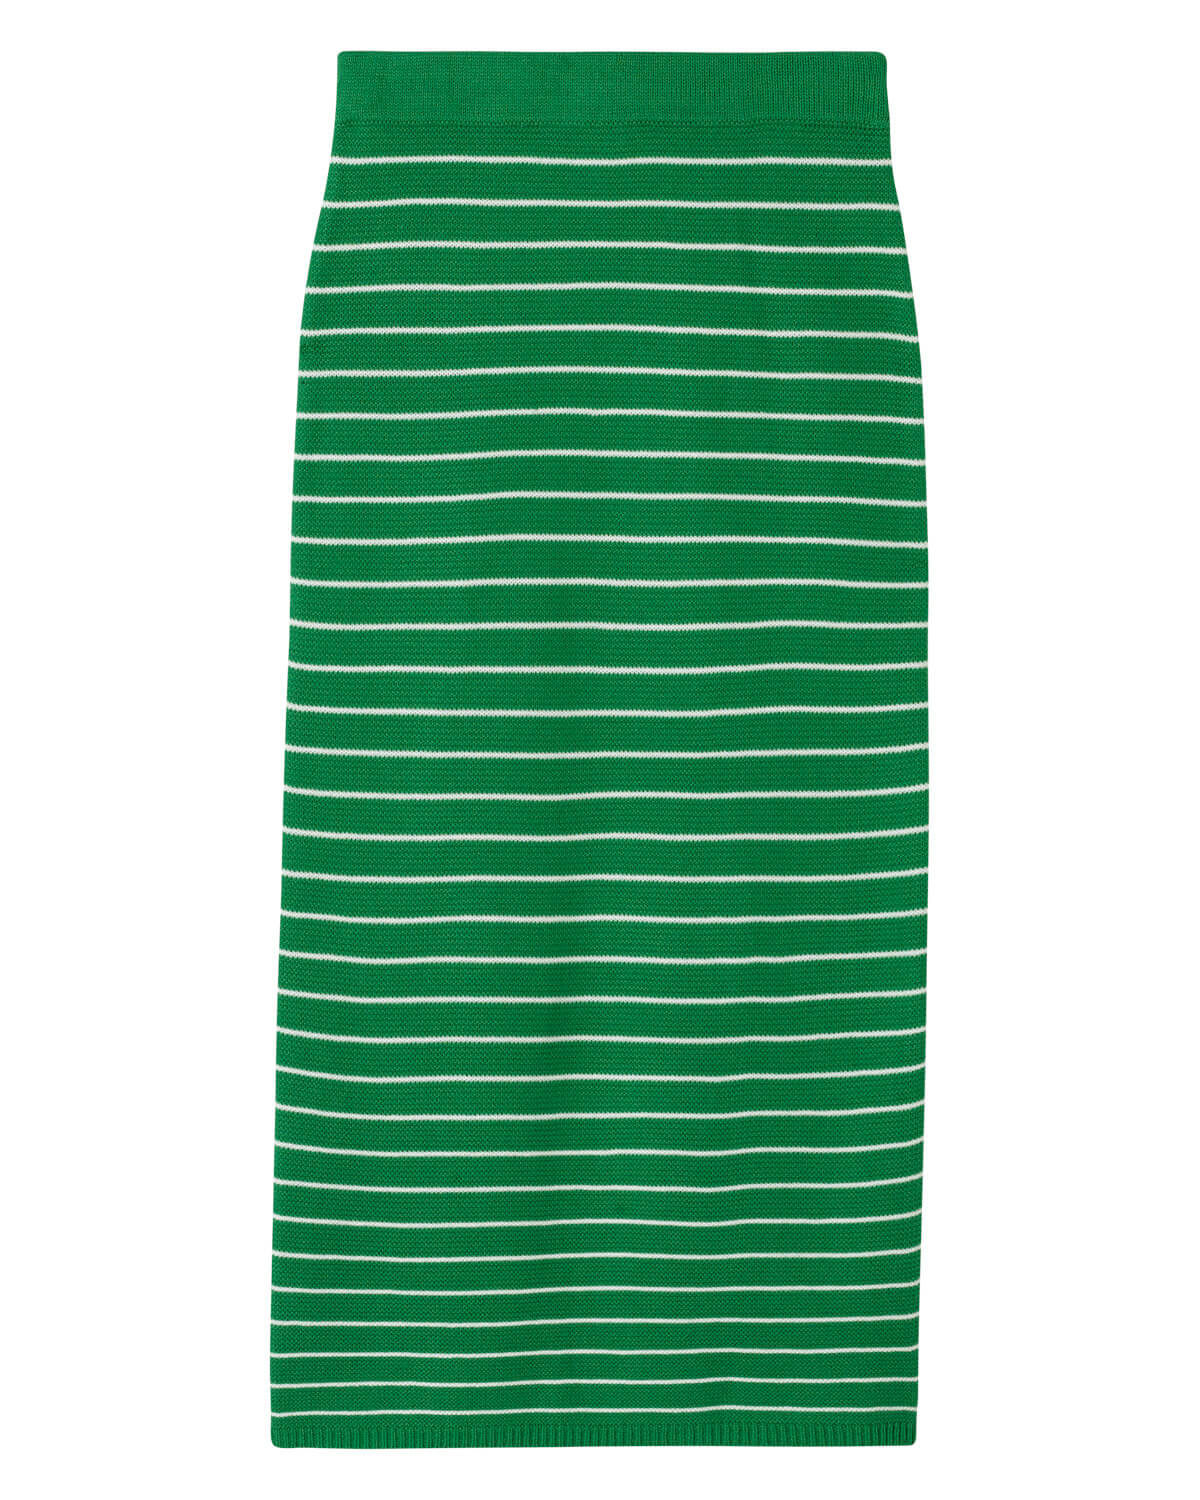 Truth Women's Pull-On Striped Maxi Skirt | JANE + MERCER